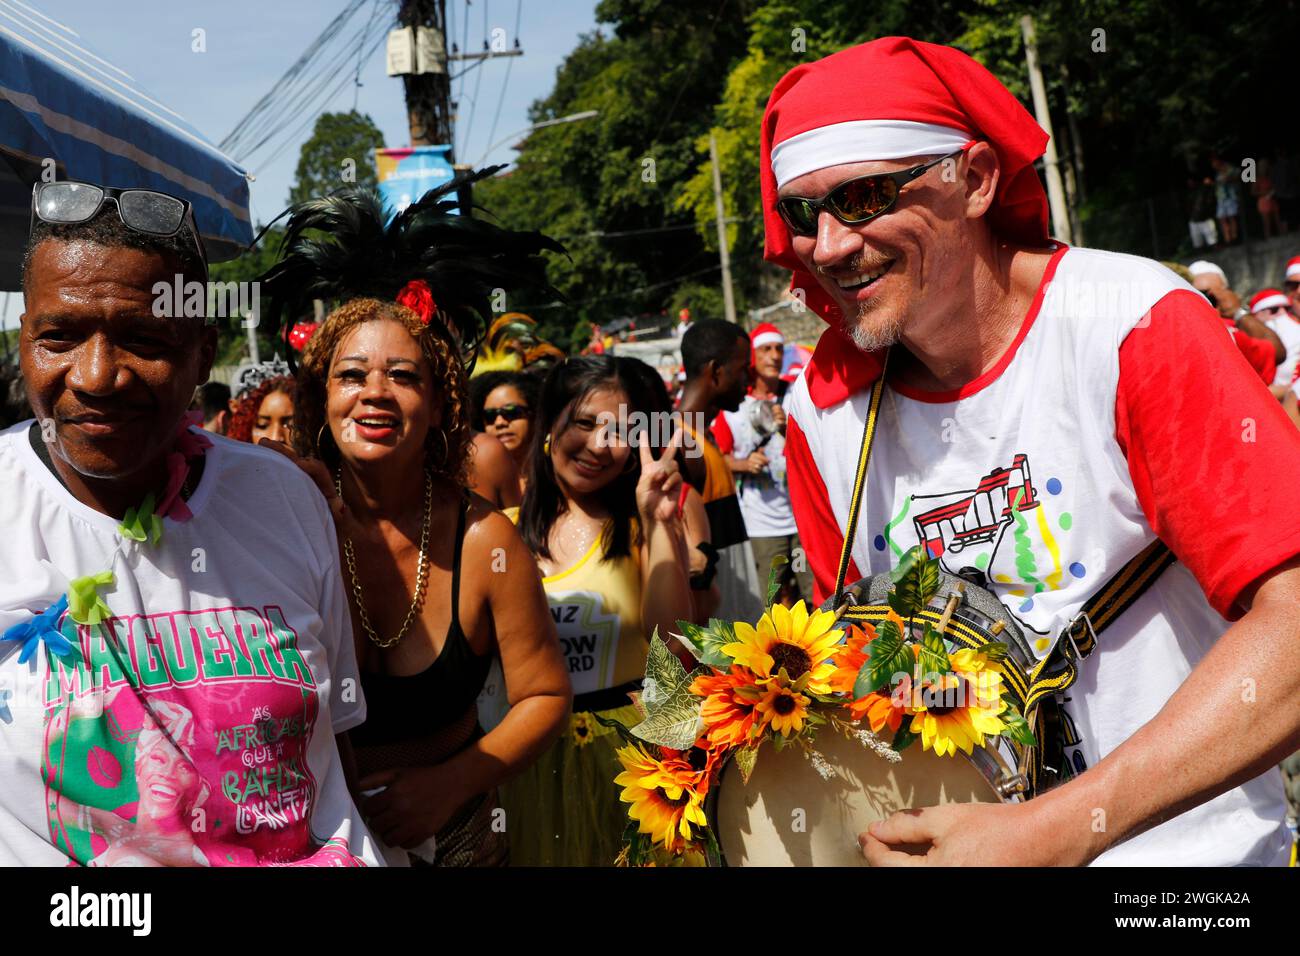 Sfilata di carnevale di strada a Rio de Janeiro. I festaioli si esibiscono alla sfilata di carnevale Bloco das Carmelitas nelle strade del quartiere di Santa Teresa Foto Stock